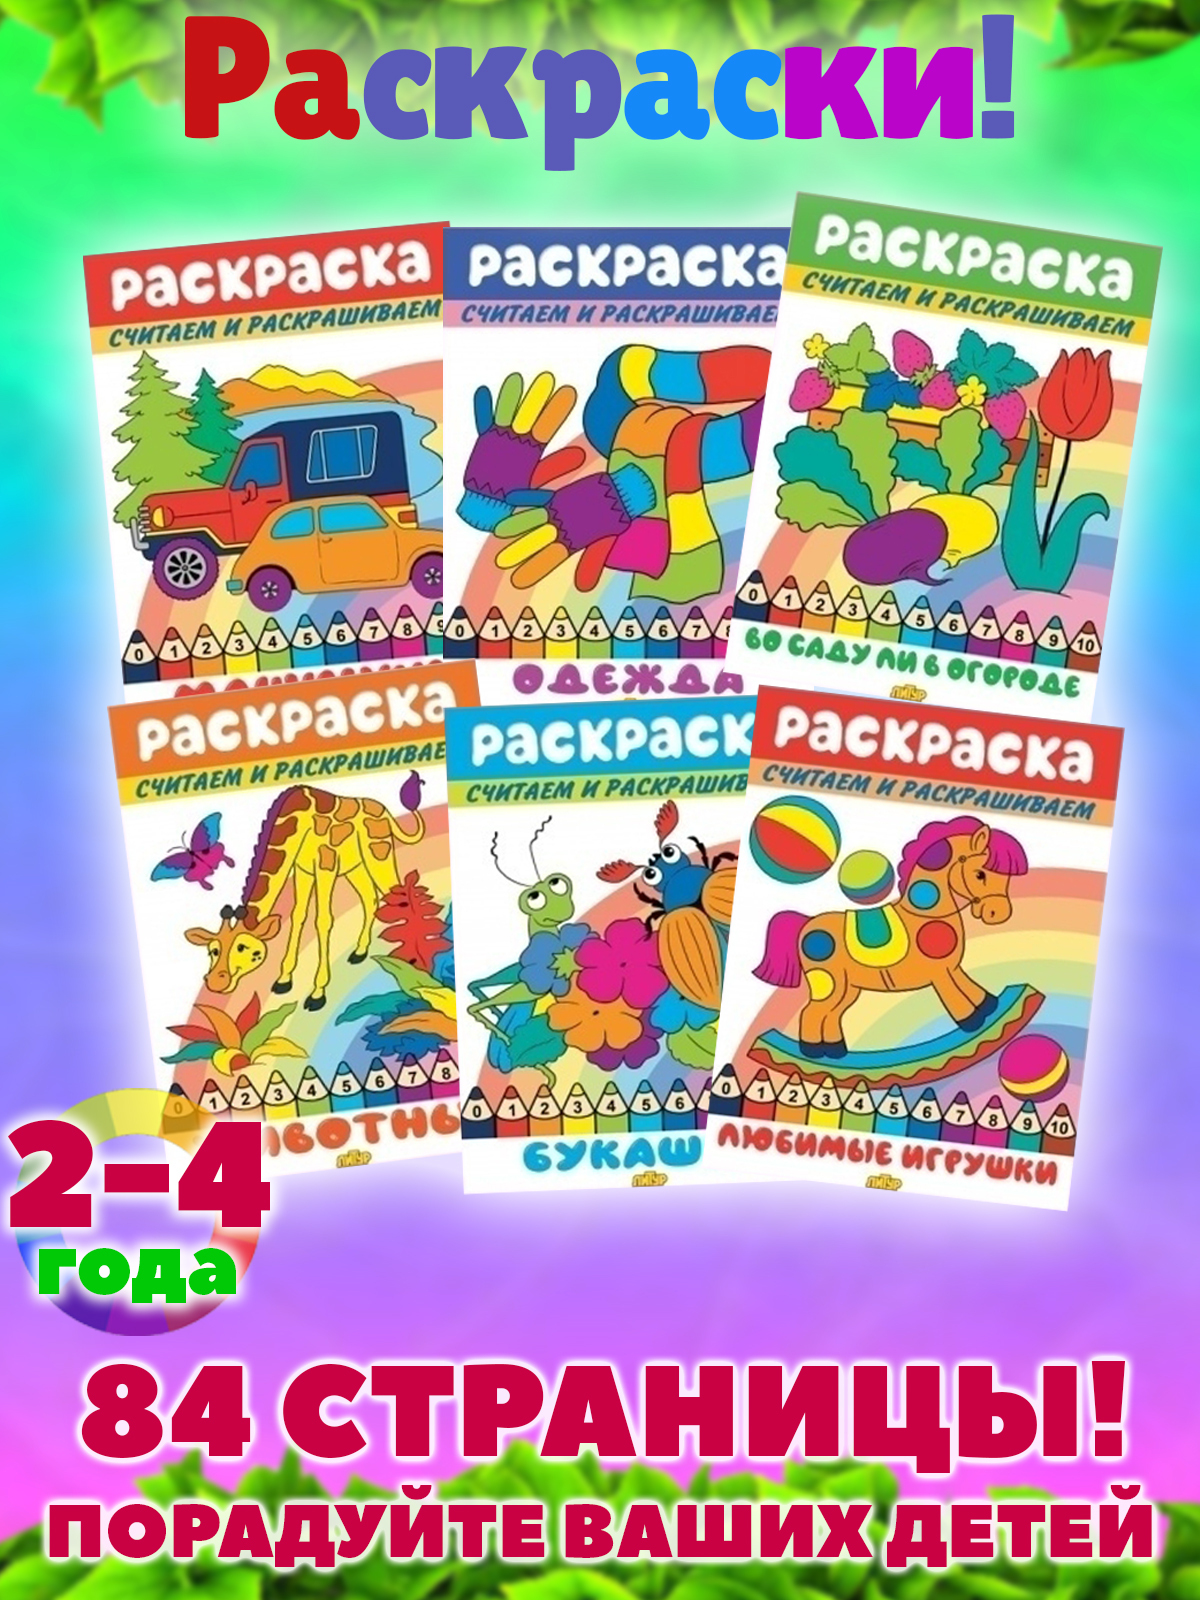 Матрешки раскраски для детей и взрослых от производителя русских матрешек! Доставка